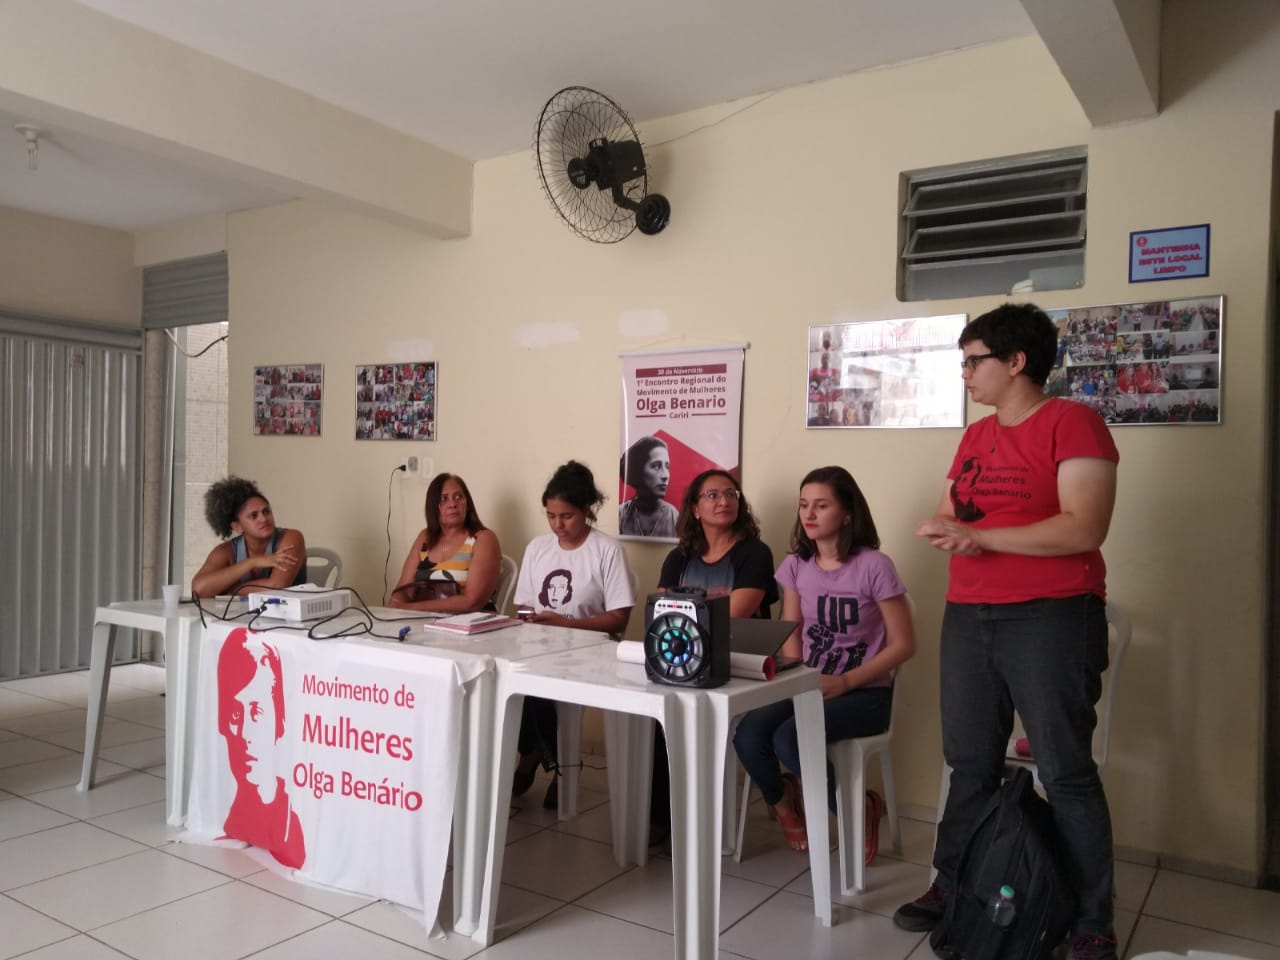 Movimento Olga Benario organiza oficina de xadrez para mulheres - A Verdade